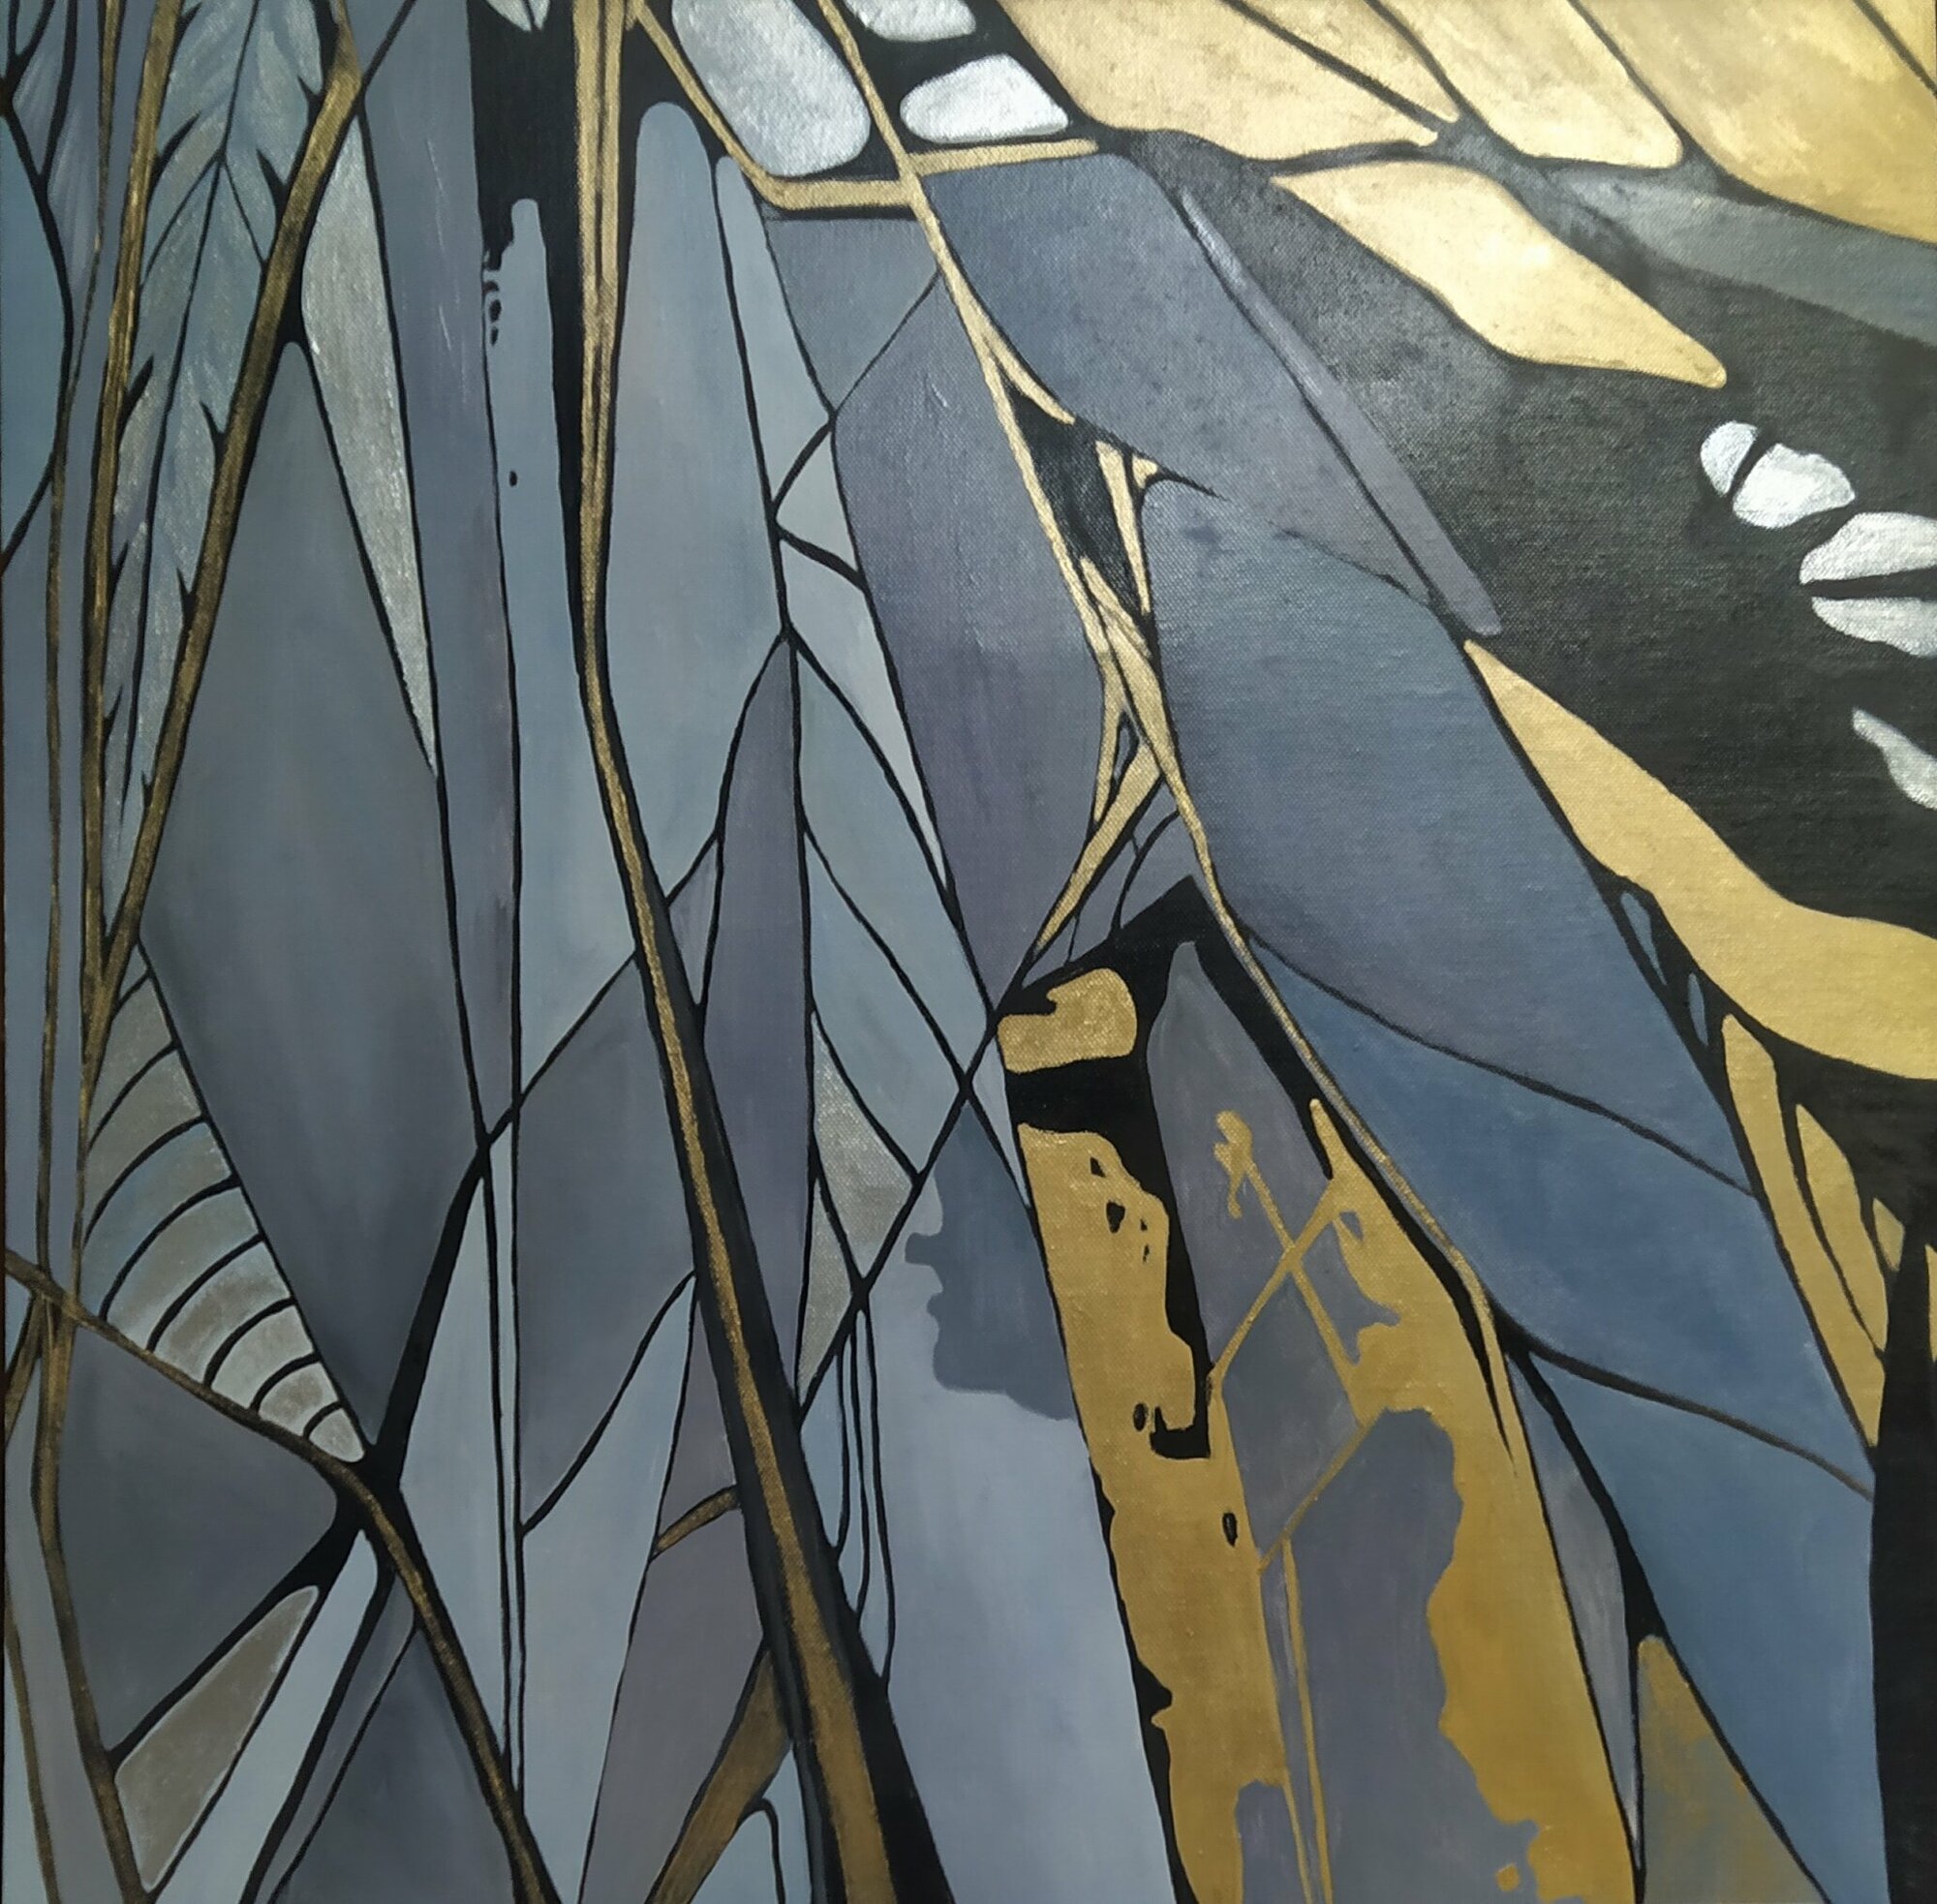 Интерьерная картина "Перья", абстракция, картина маслом, холст 58*58 см, ручная работа, Соснина Татьяна.